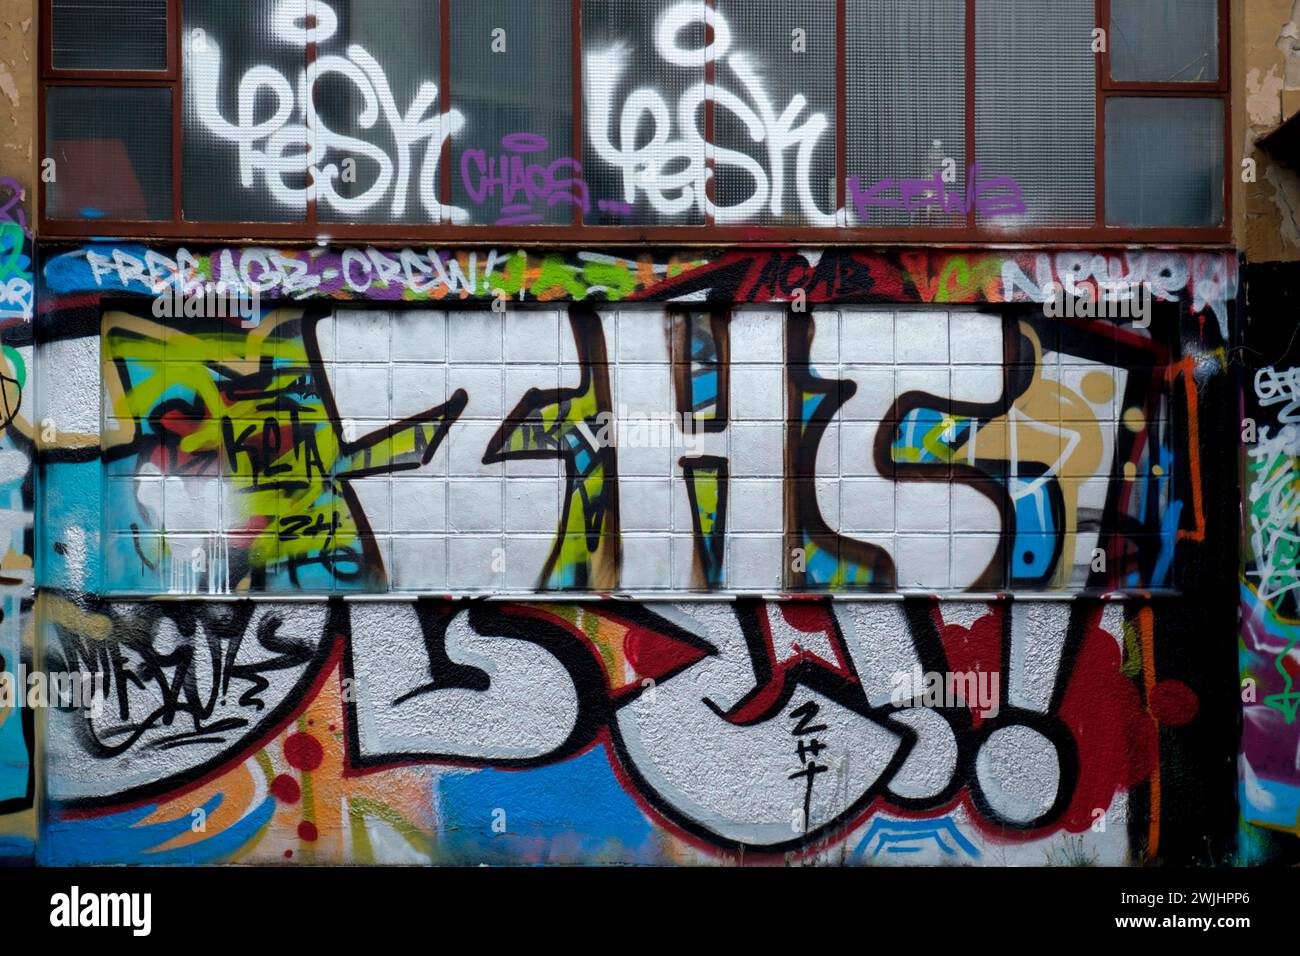 Un mur plein de graffitis colorés avec différents lettrages et styles, Rhénanie-Palatinat, Allemagne Banque D'Images